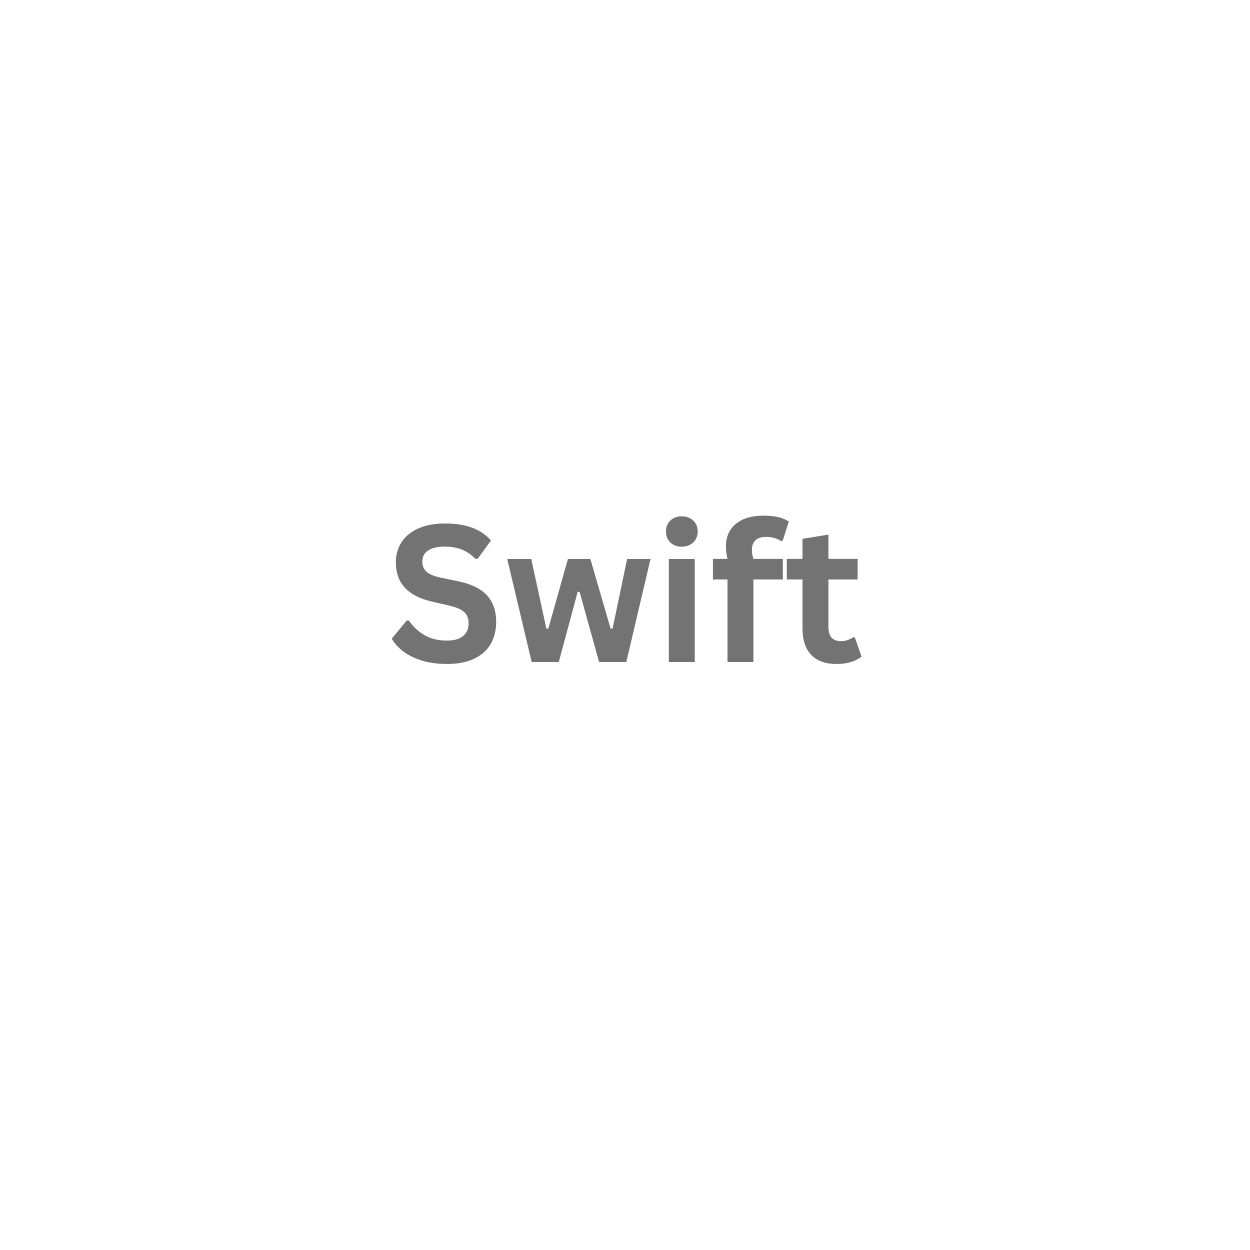 SwiftSwift